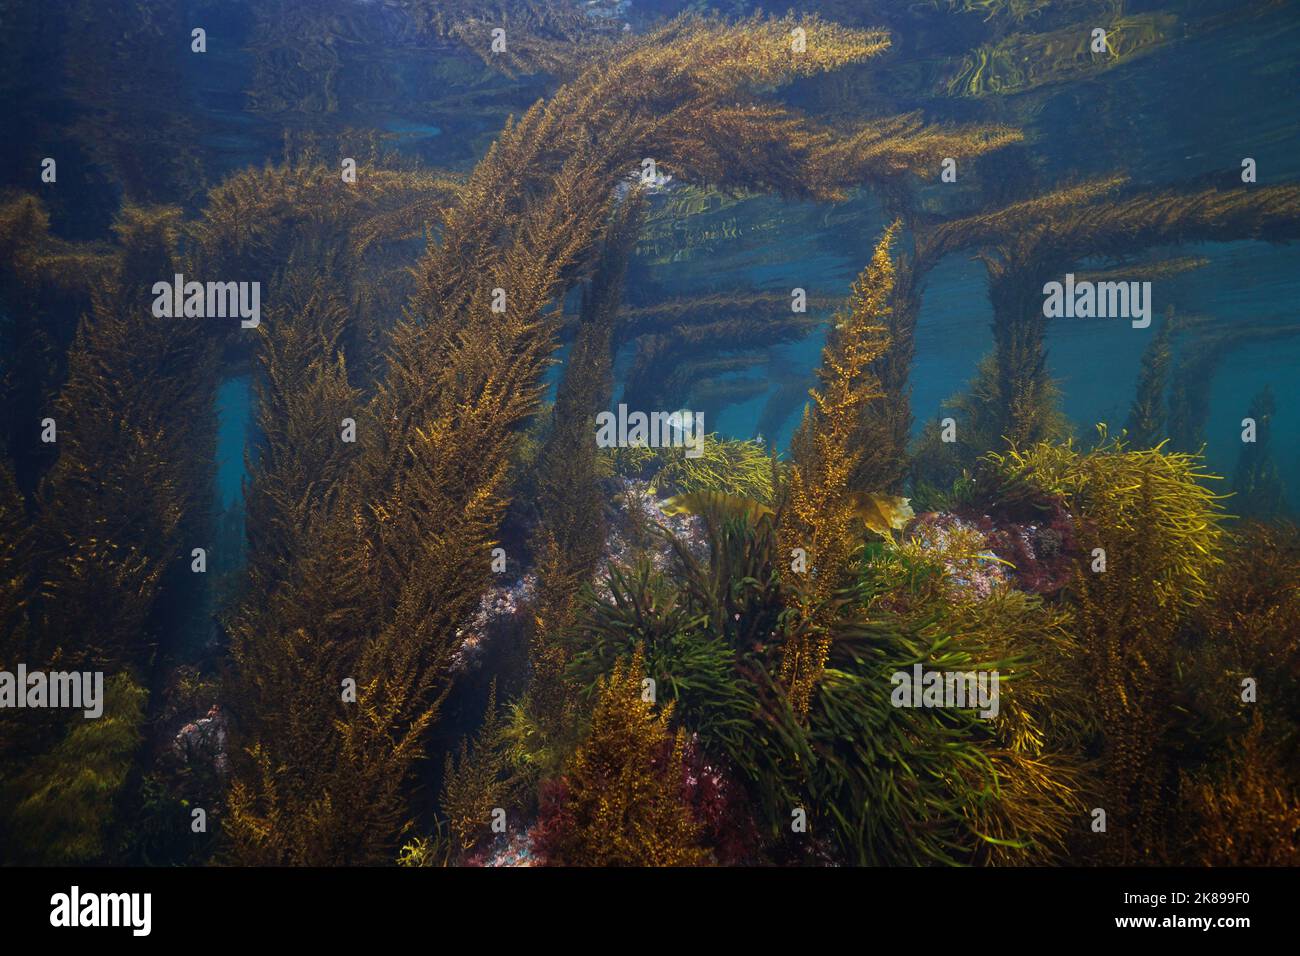 Algues marins paysage marin dans l'océan Atlantique dans les eaux peu profondes, Espagne, Galice, Rias baixas Banque D'Images